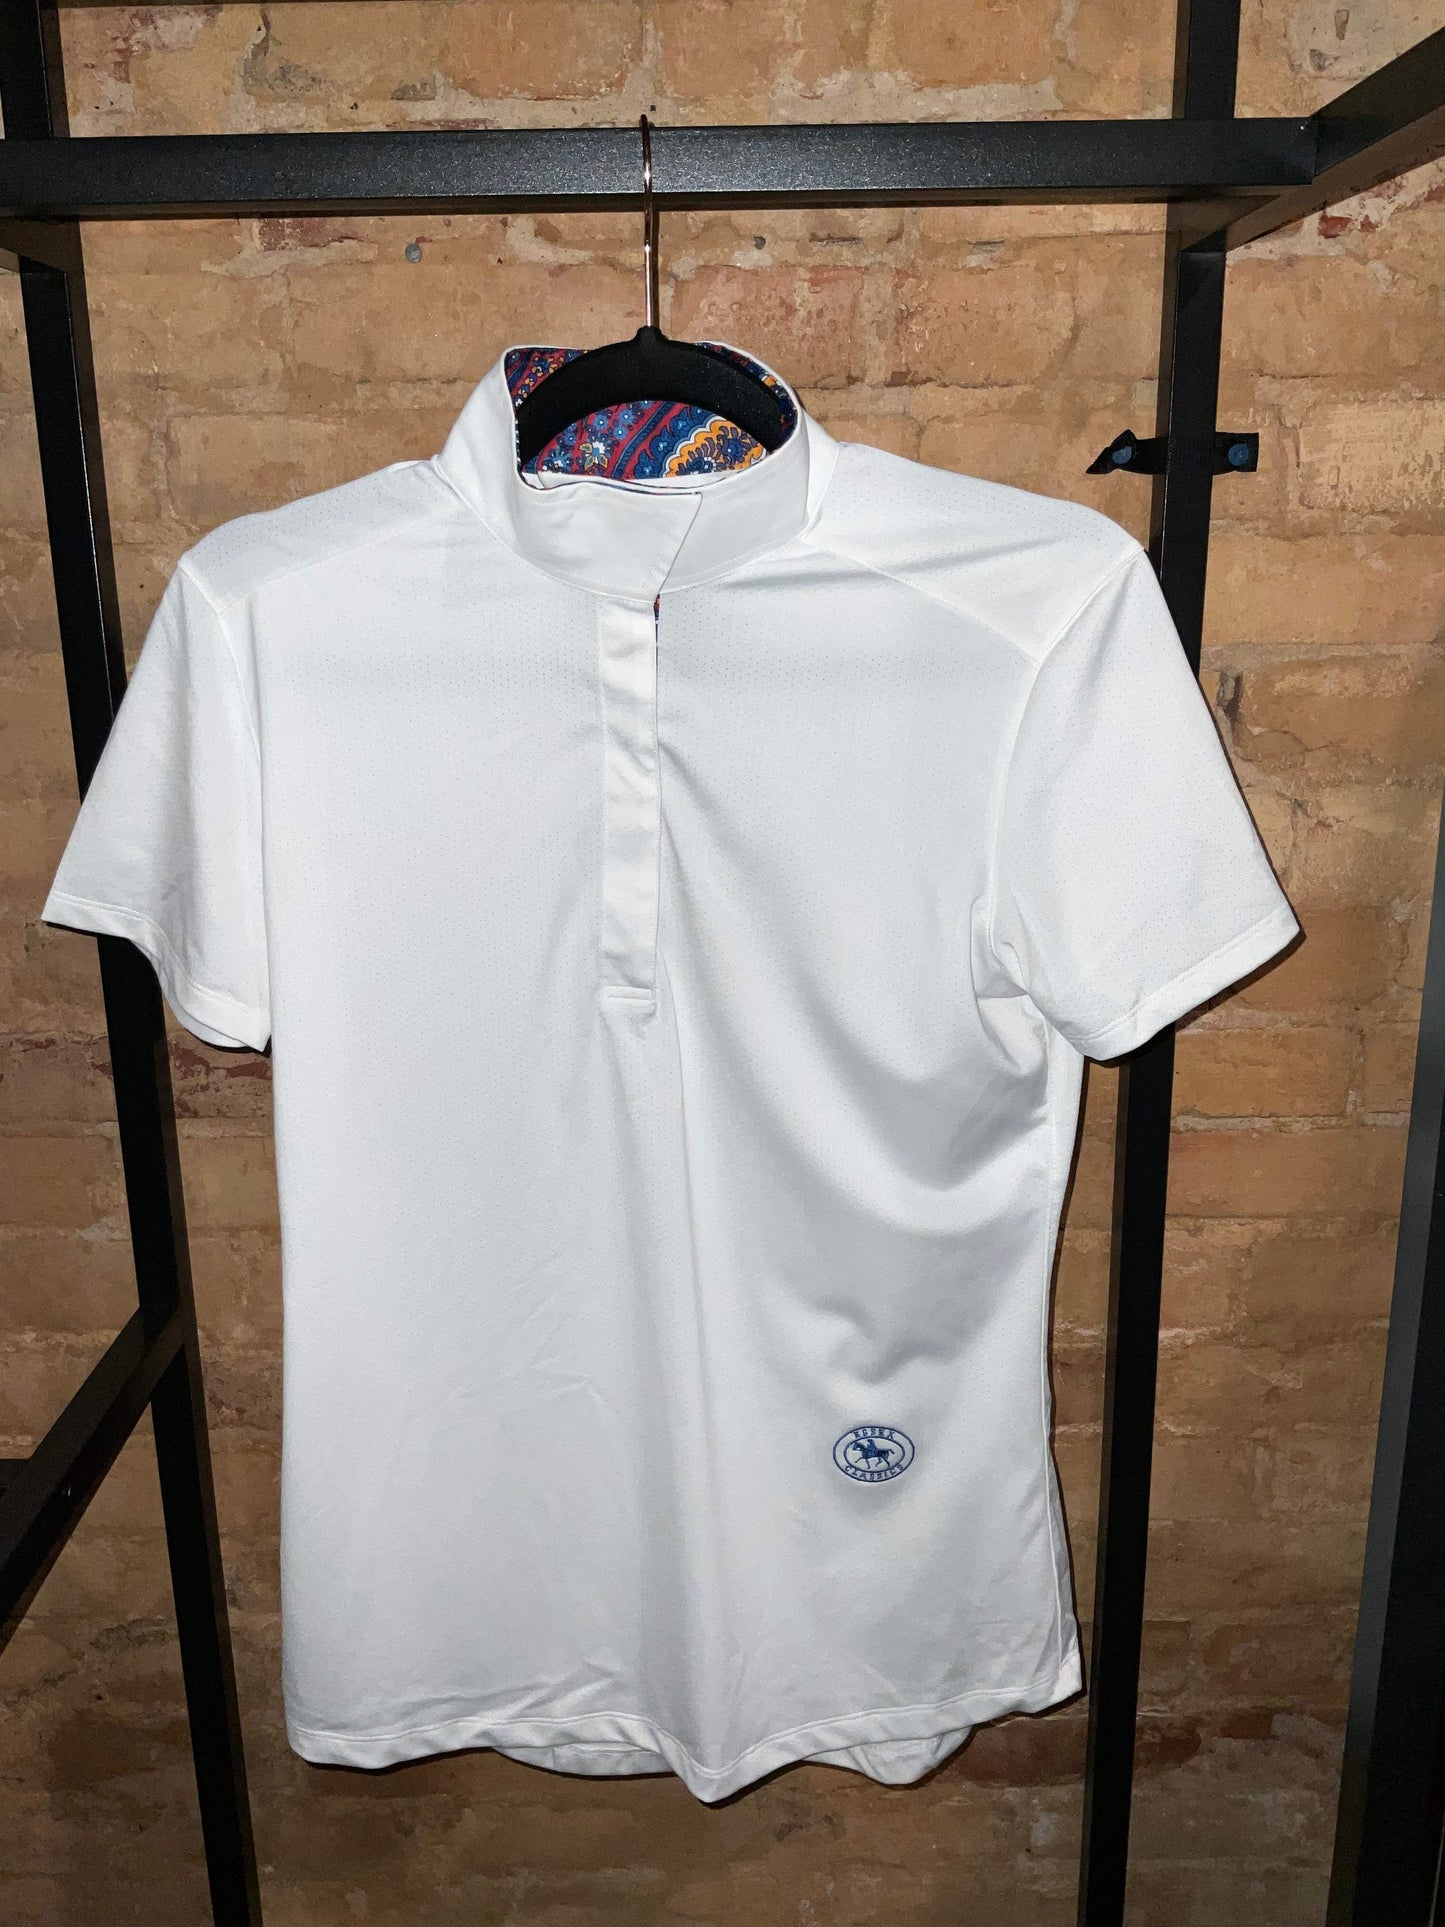 Essex Classics Talent Yarn Wrap Collar S/S Shirt Size M